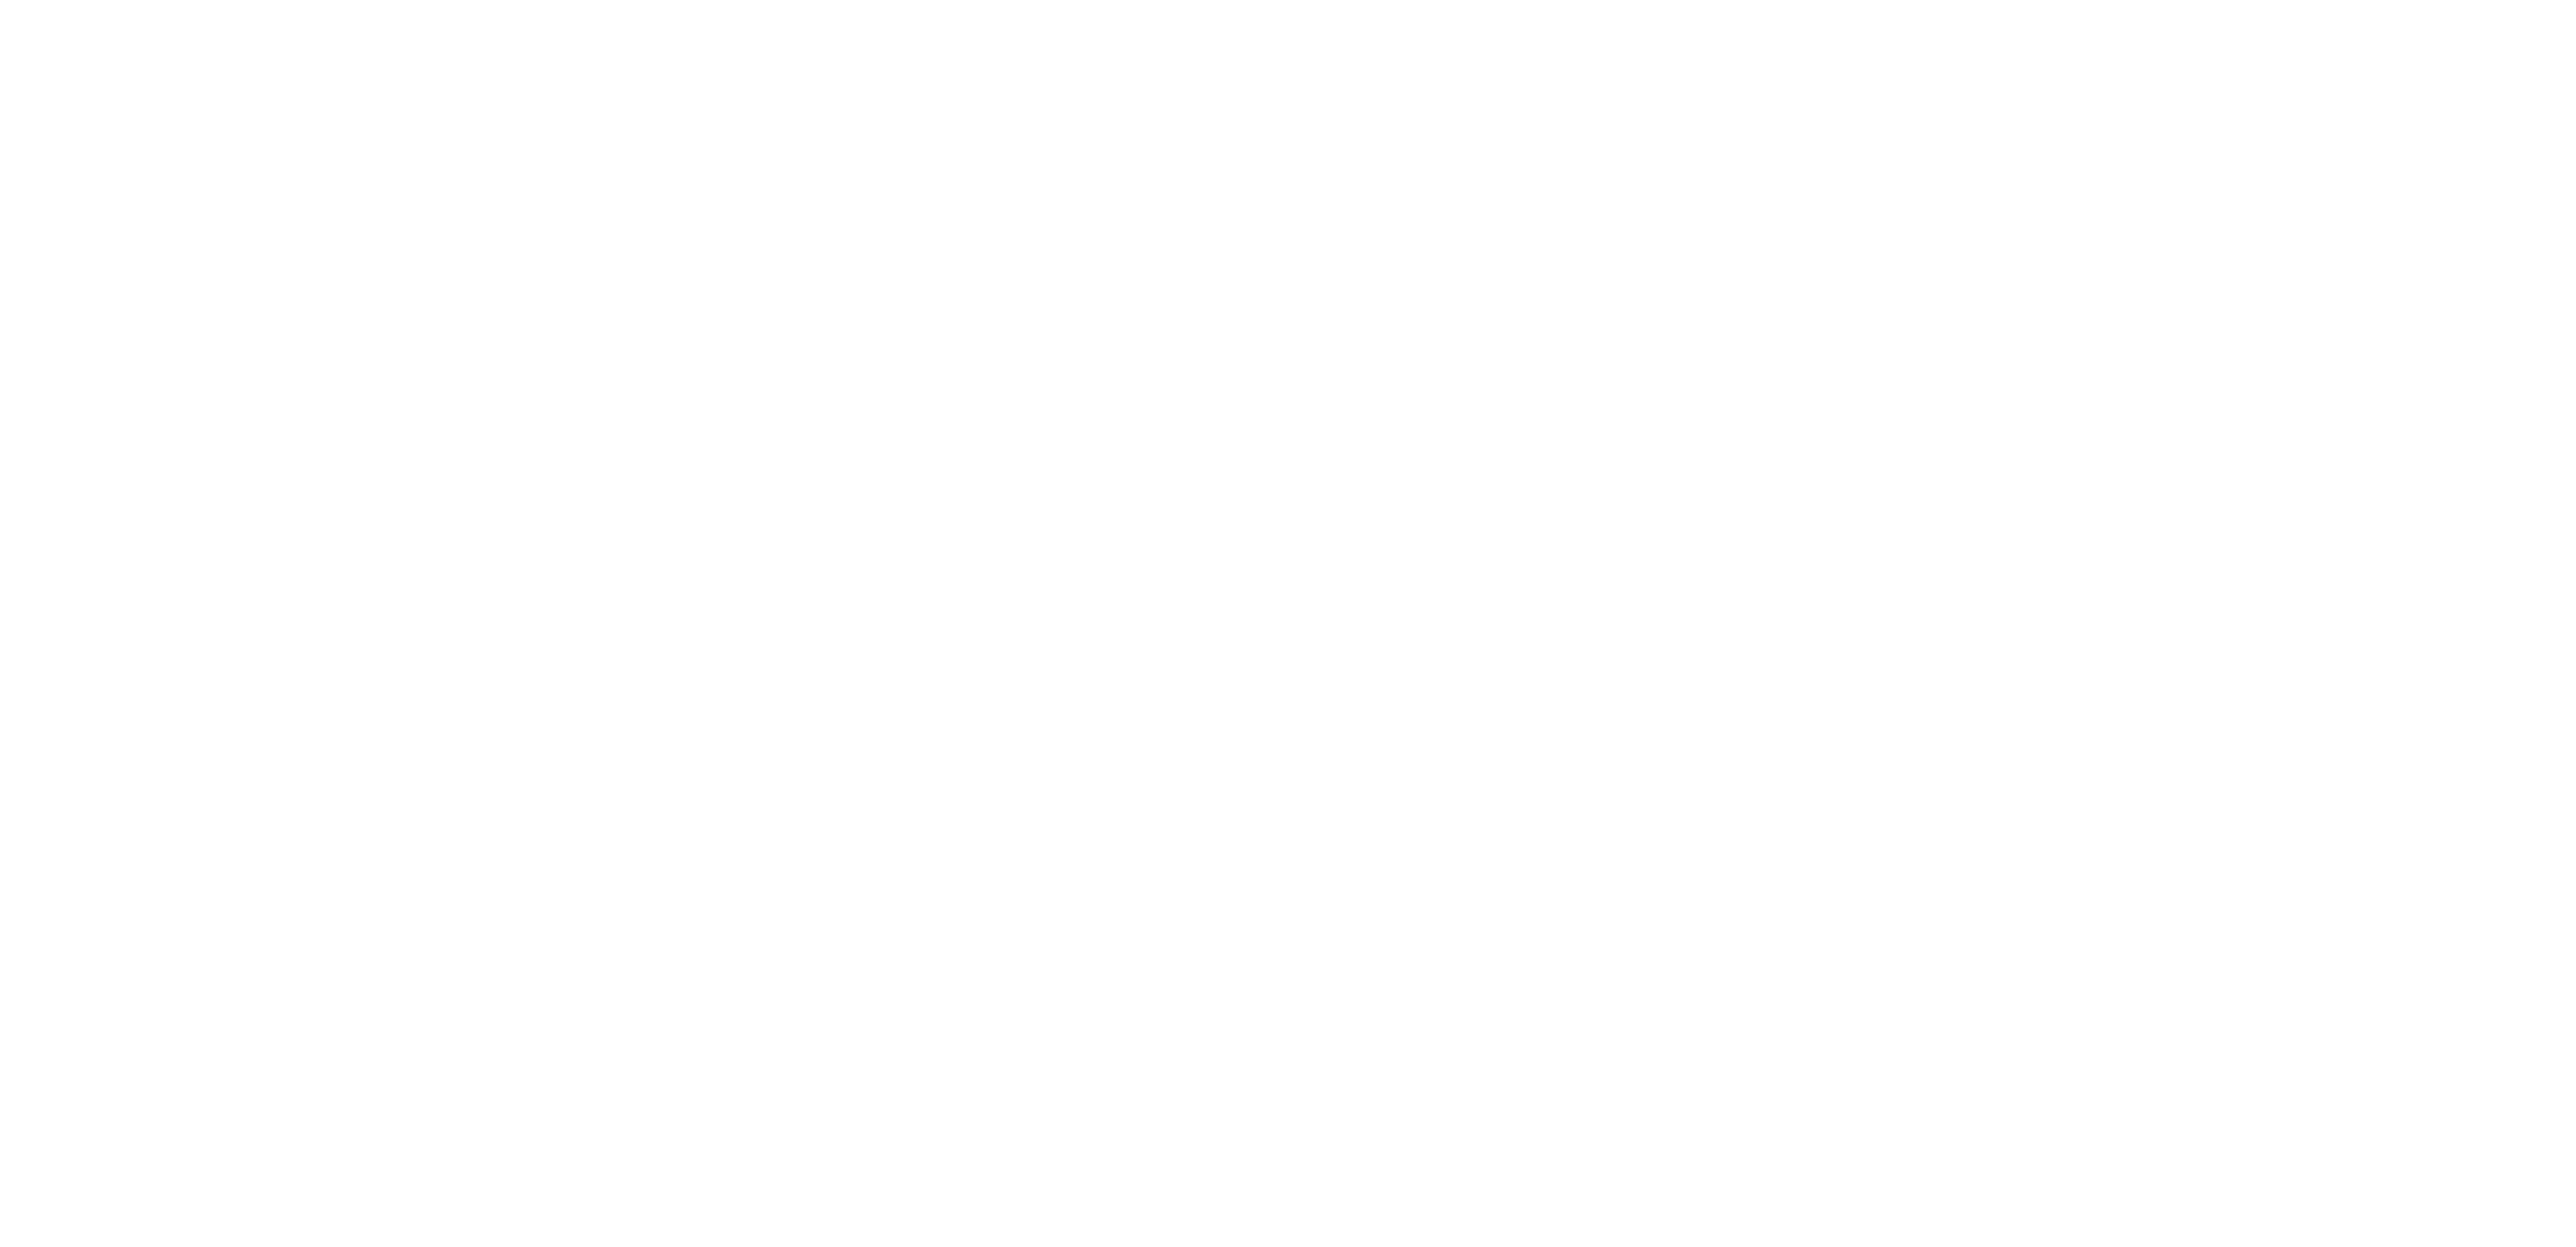 Graphic: Duckhorn logo in white